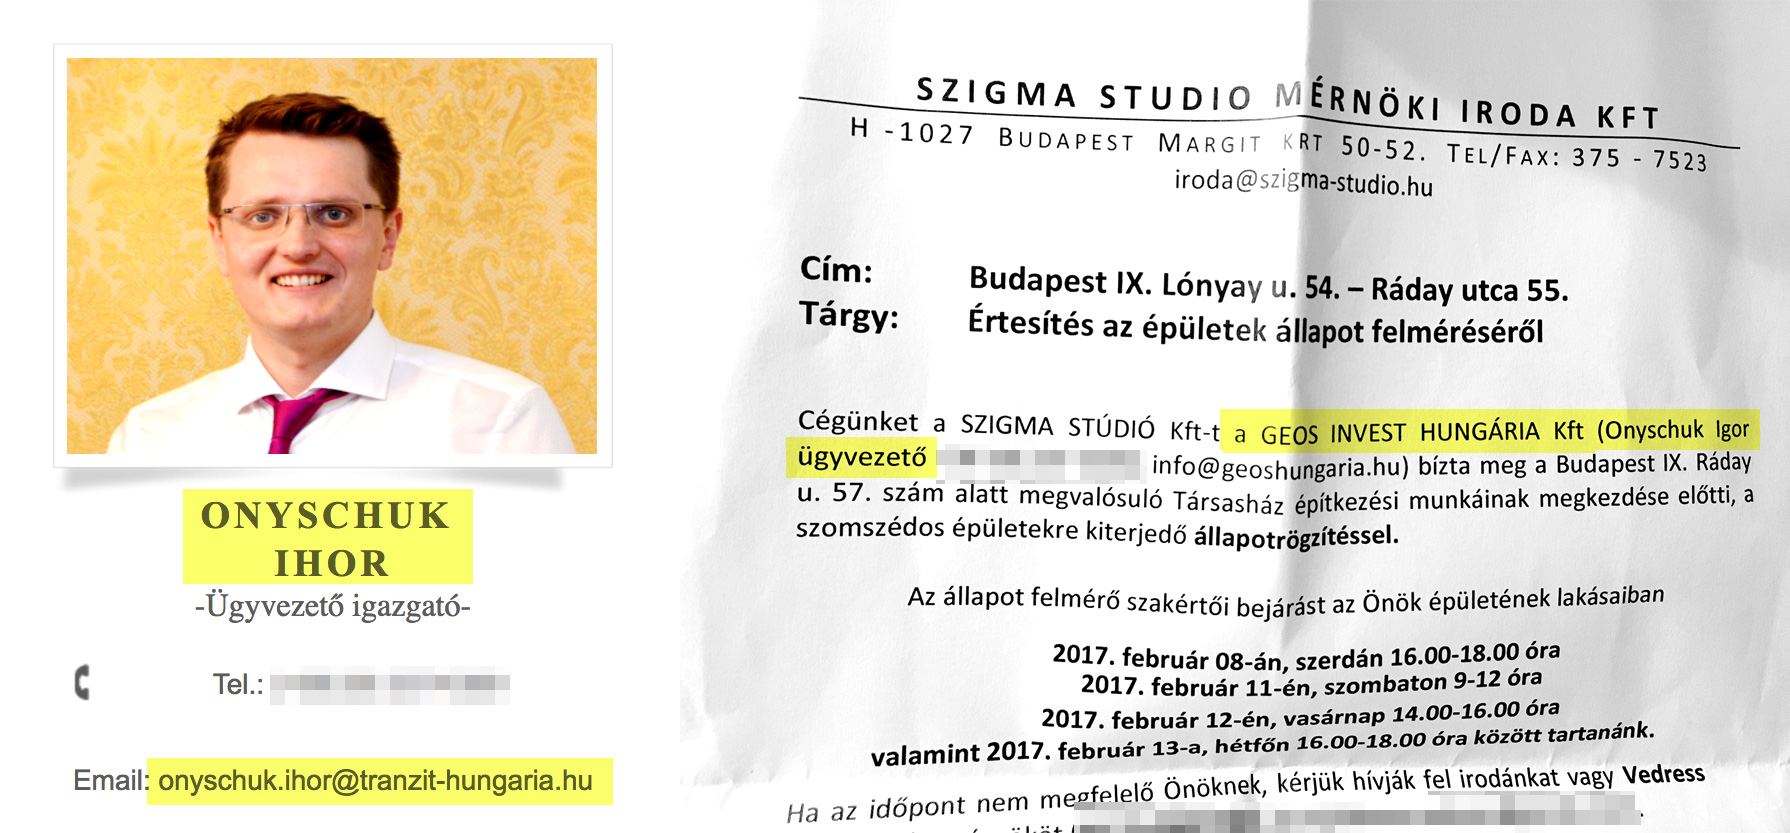 Ihor Onyschuk bal oldali képen, mint a Tranzit Hungária ügyvezetője, jobb oldalon pedig mint a Geos Invest Hungária ügyvezetője.